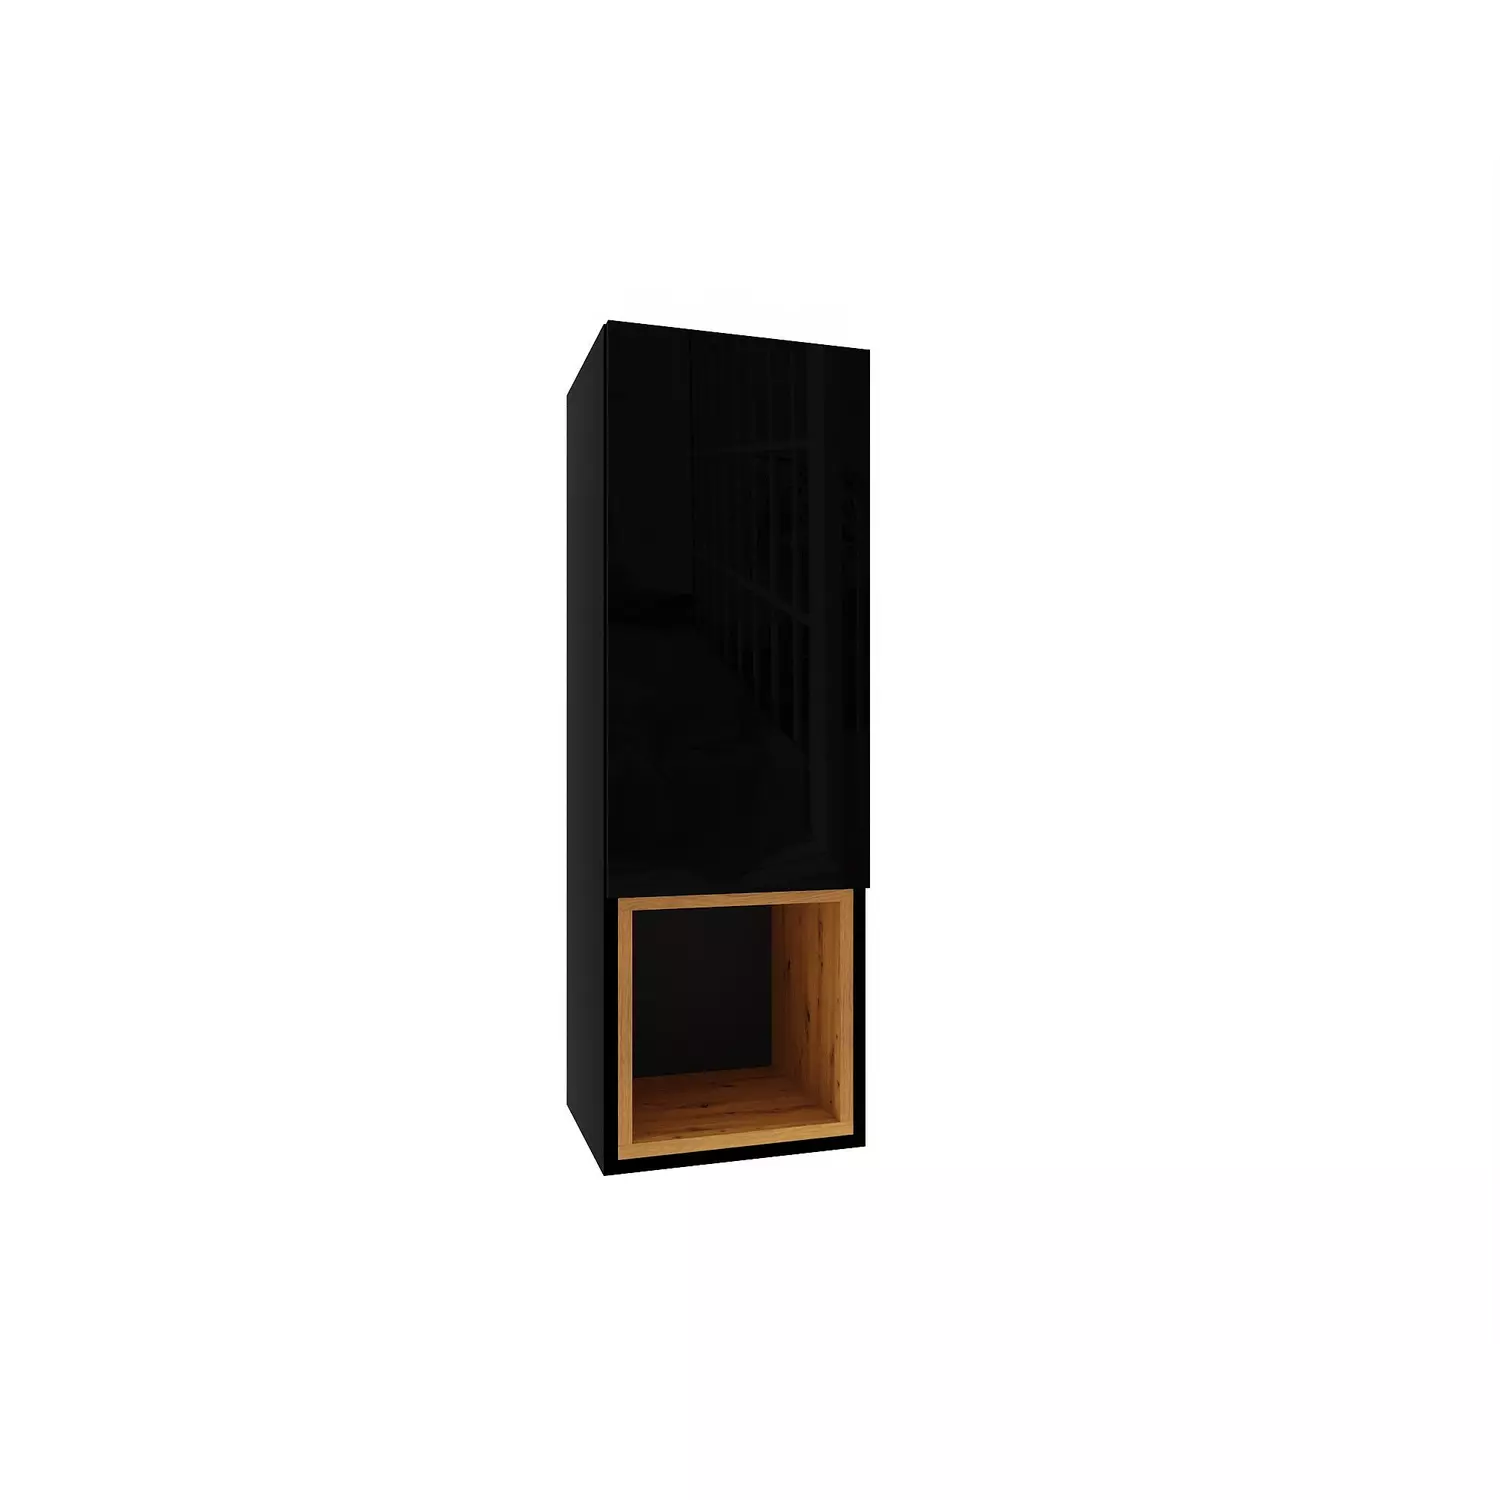 IZUMI 3 magasfényű fekete/fekete polcos függesztett fali szekrény, 105 BL